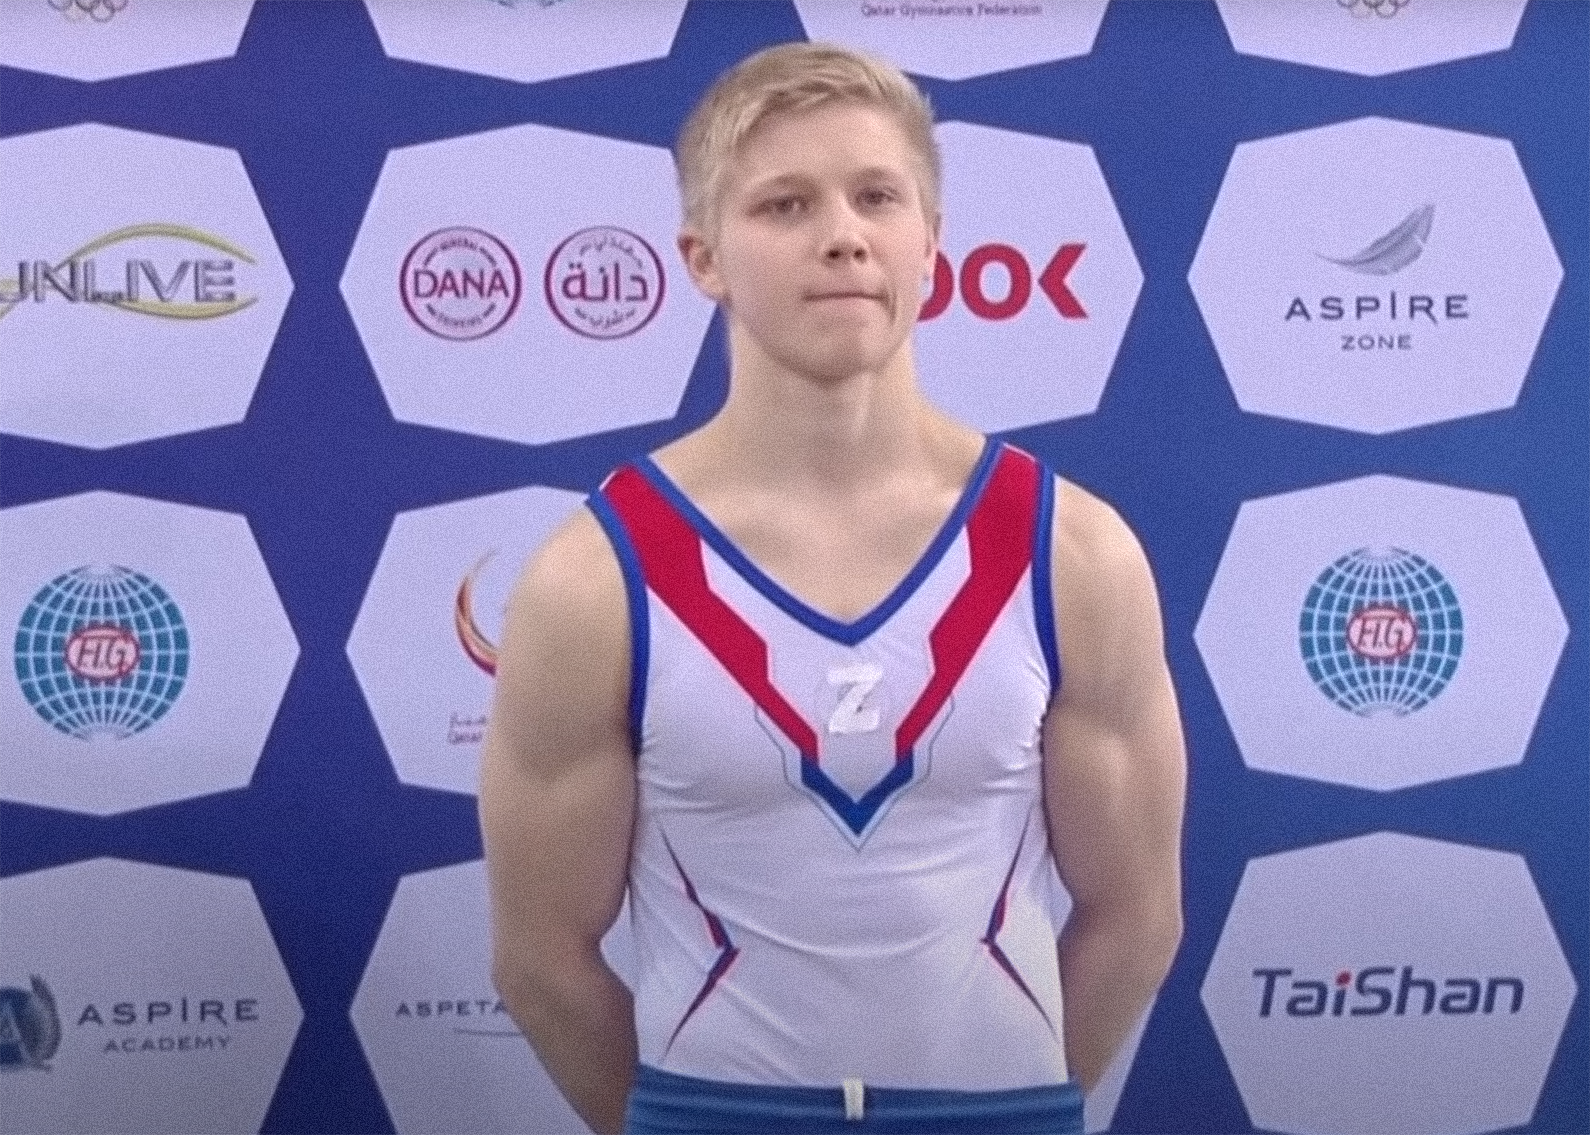 "Это несправедливо": Федерация спортивной гимнастики России оспорит дисквалификацию Куляка из-за буквы Z